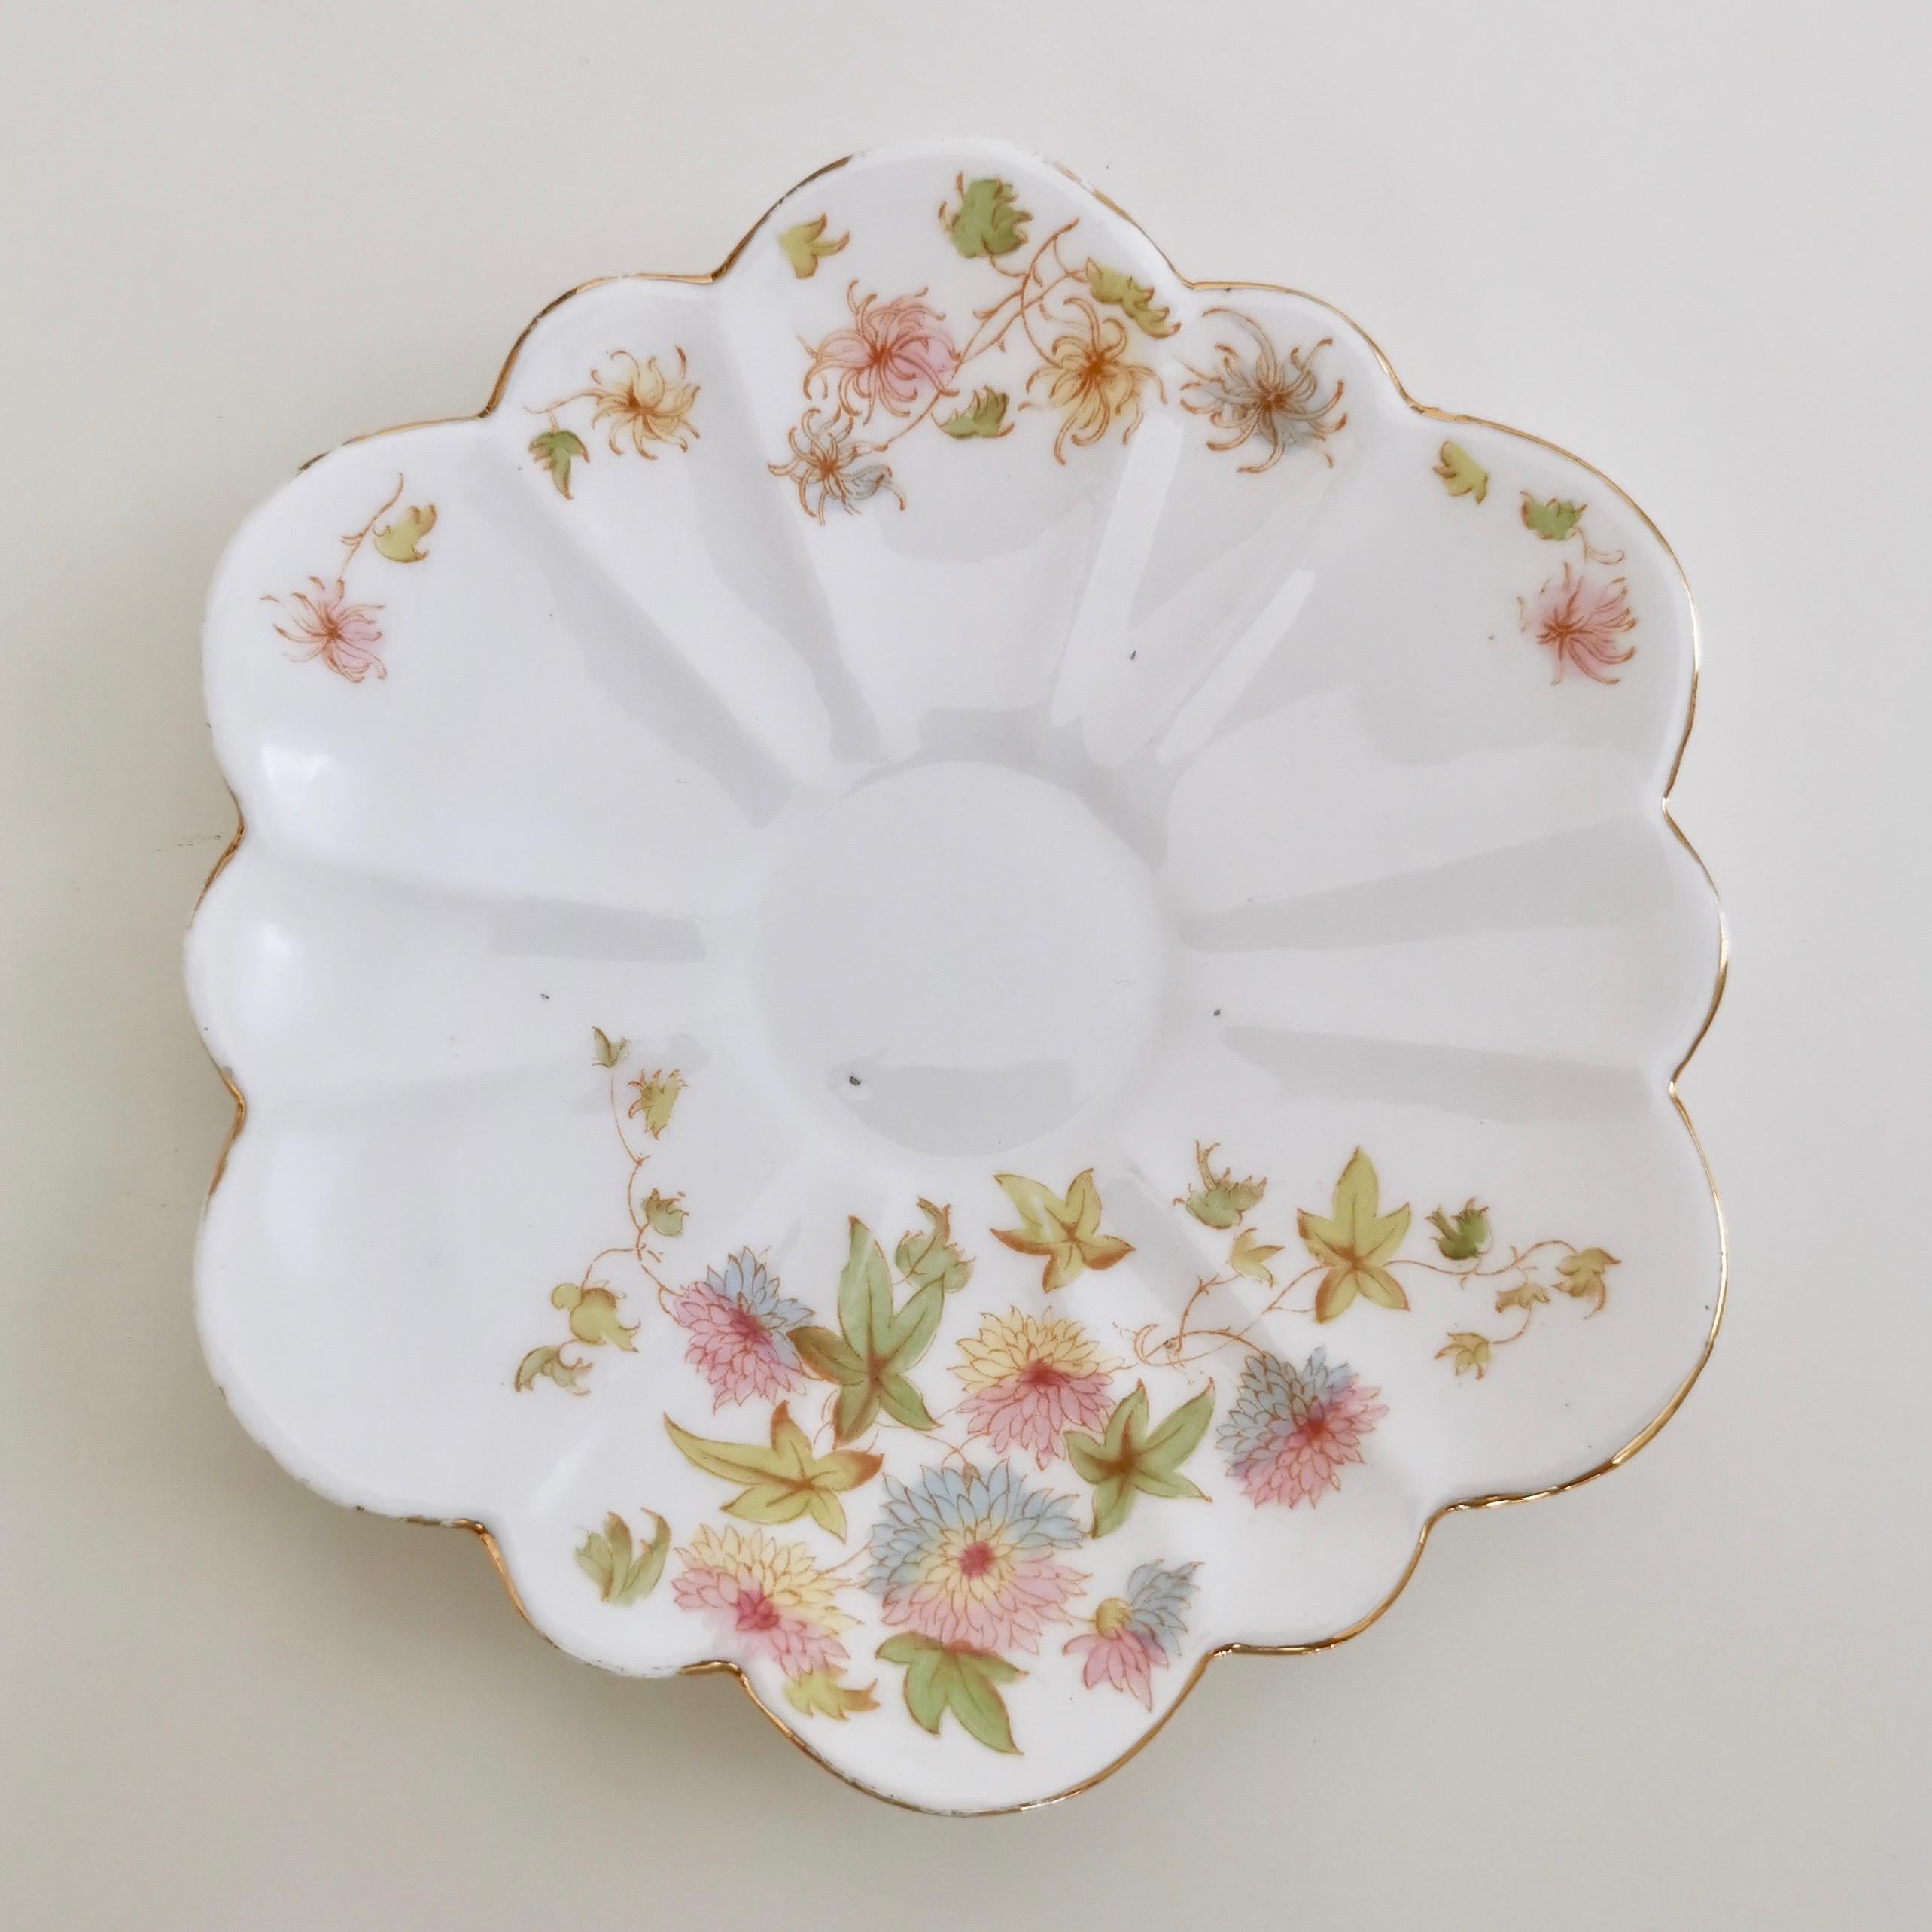 Late 19th Century Wileman Porcelain Tea Set, Chrysanthemum, Pastel Colors, Art Nouveau, 1896